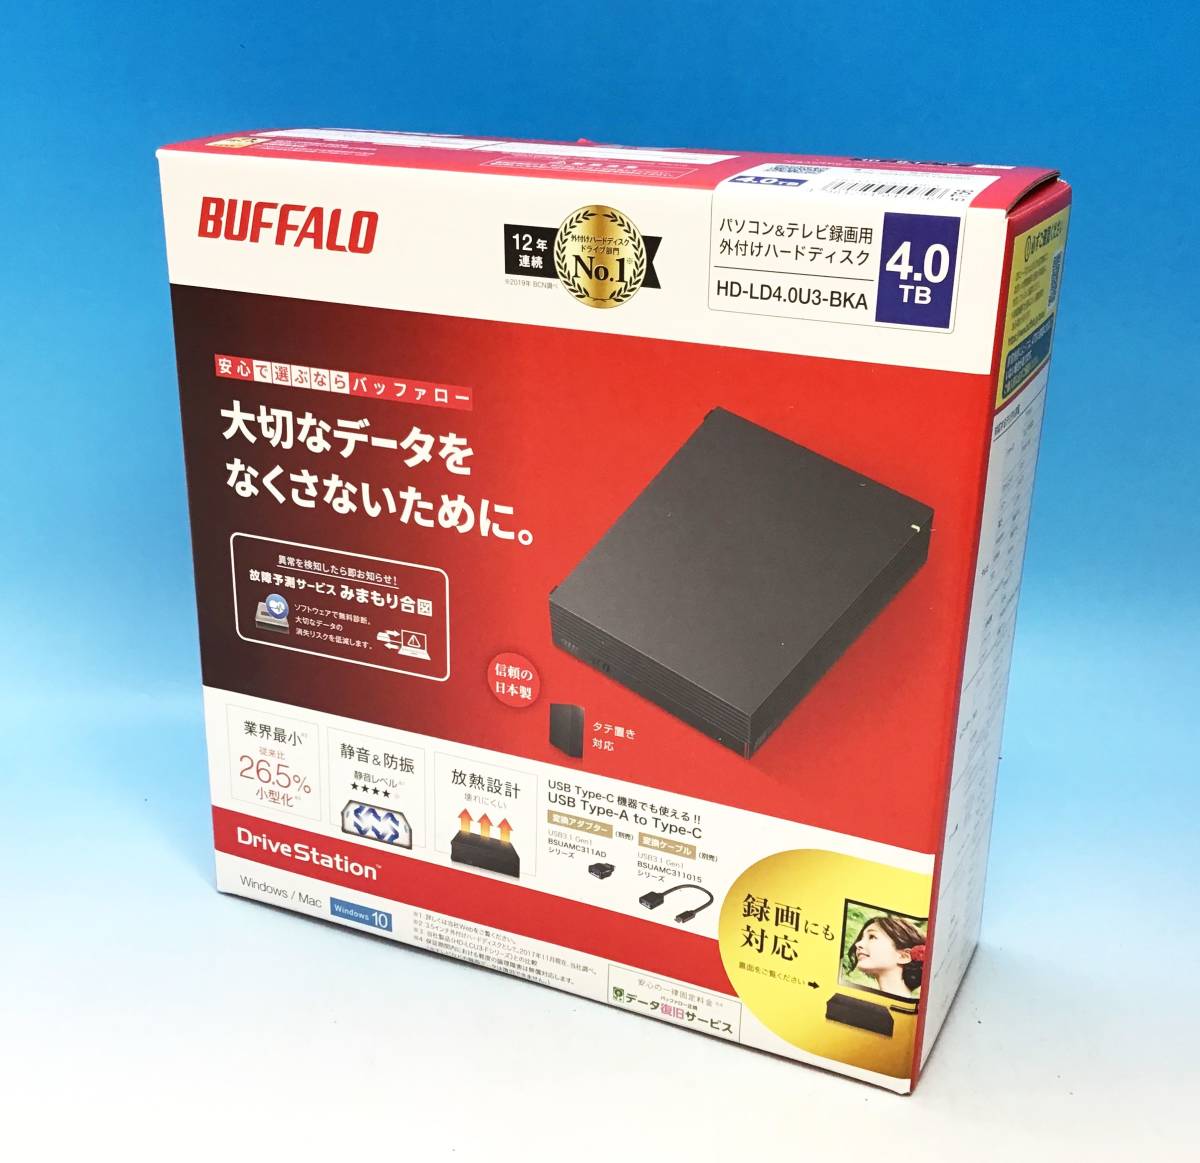 新品 未開封 BUFFALO 外付け ハードディスク HD-LD4.0U3-BKA 4.0TB パソコン テレビ録画用 HDD 静音 防振 バッファロー